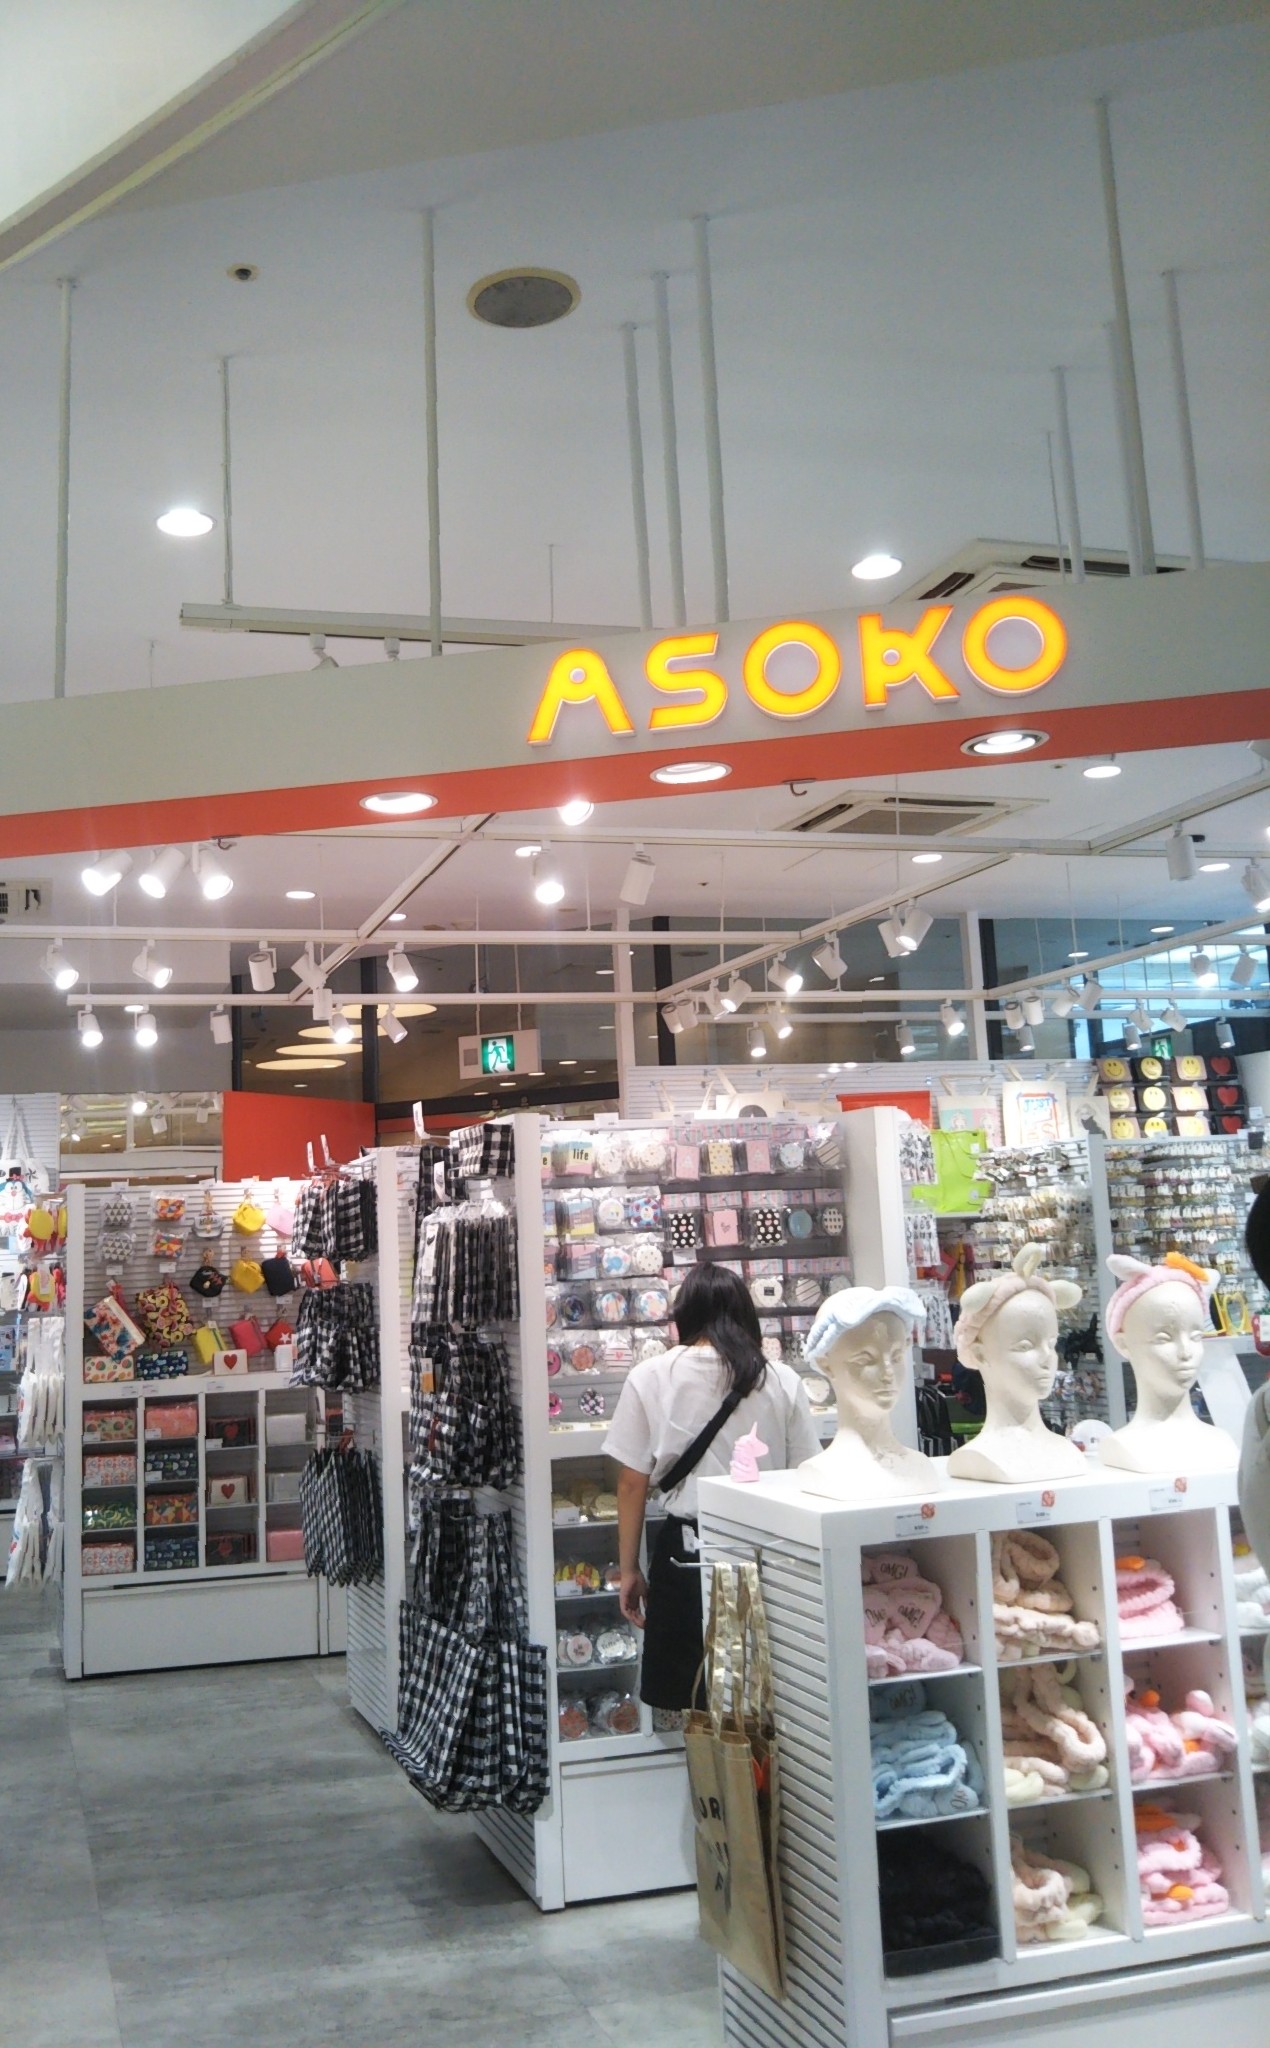 安くてカワイイ雑貨がいっぱい♪今話題の大阪発のプチプラショップ「ASOKO」（河原町OPA店）に行ってみました